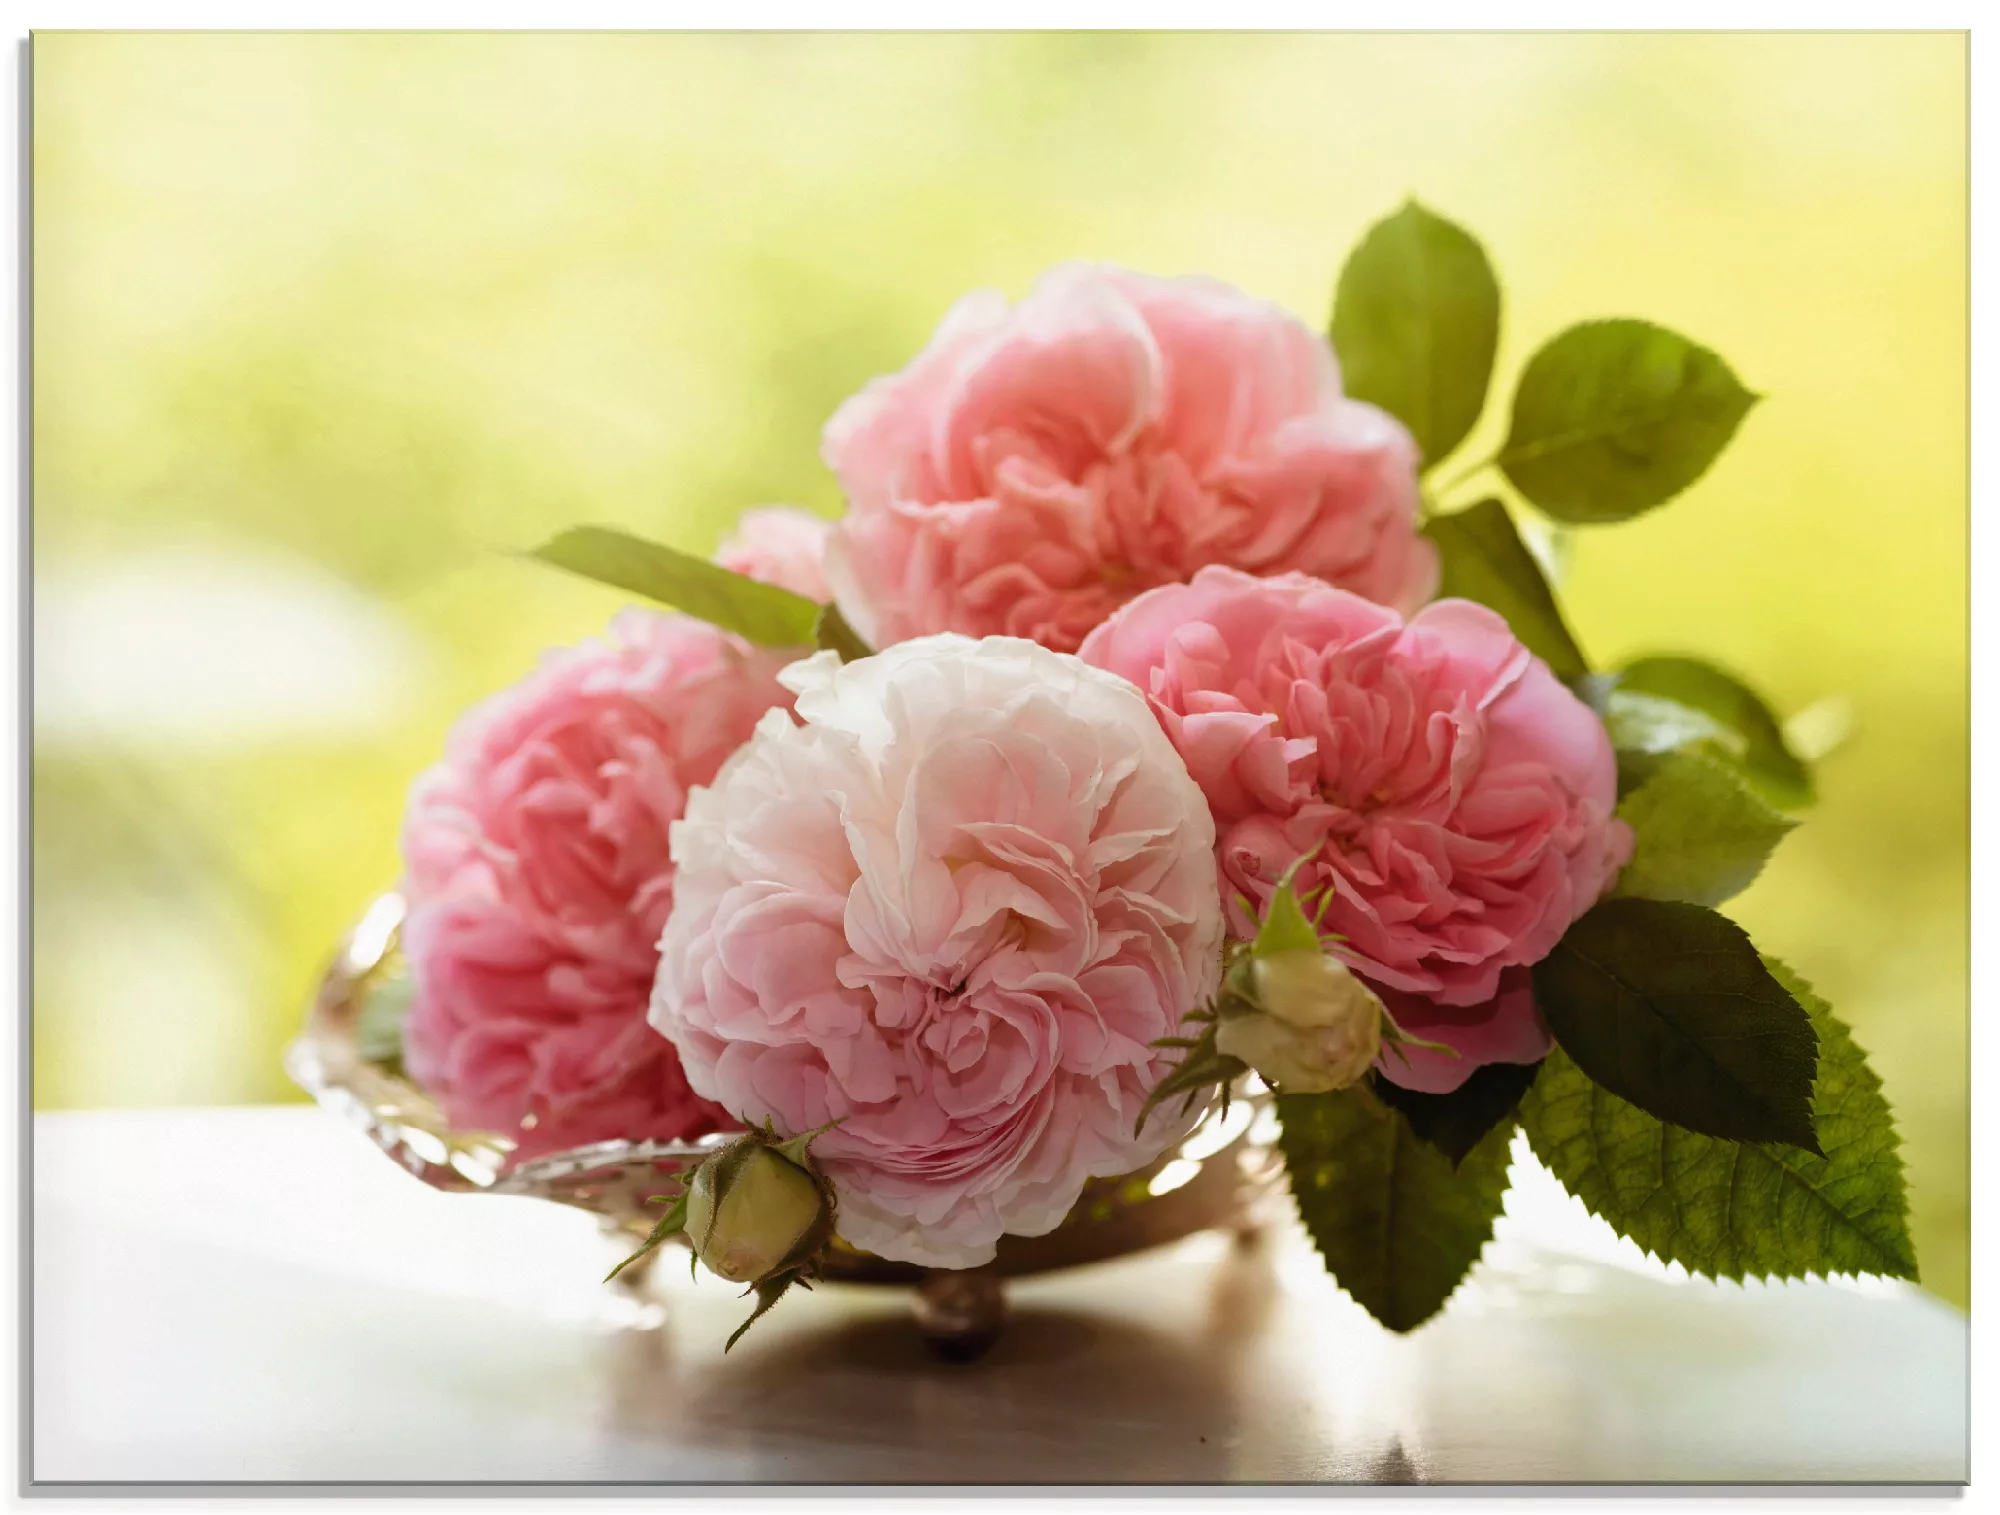 Artland Glasbild "Rosen in Silberschale Stillleben", Blumen, (1 St.) günstig online kaufen